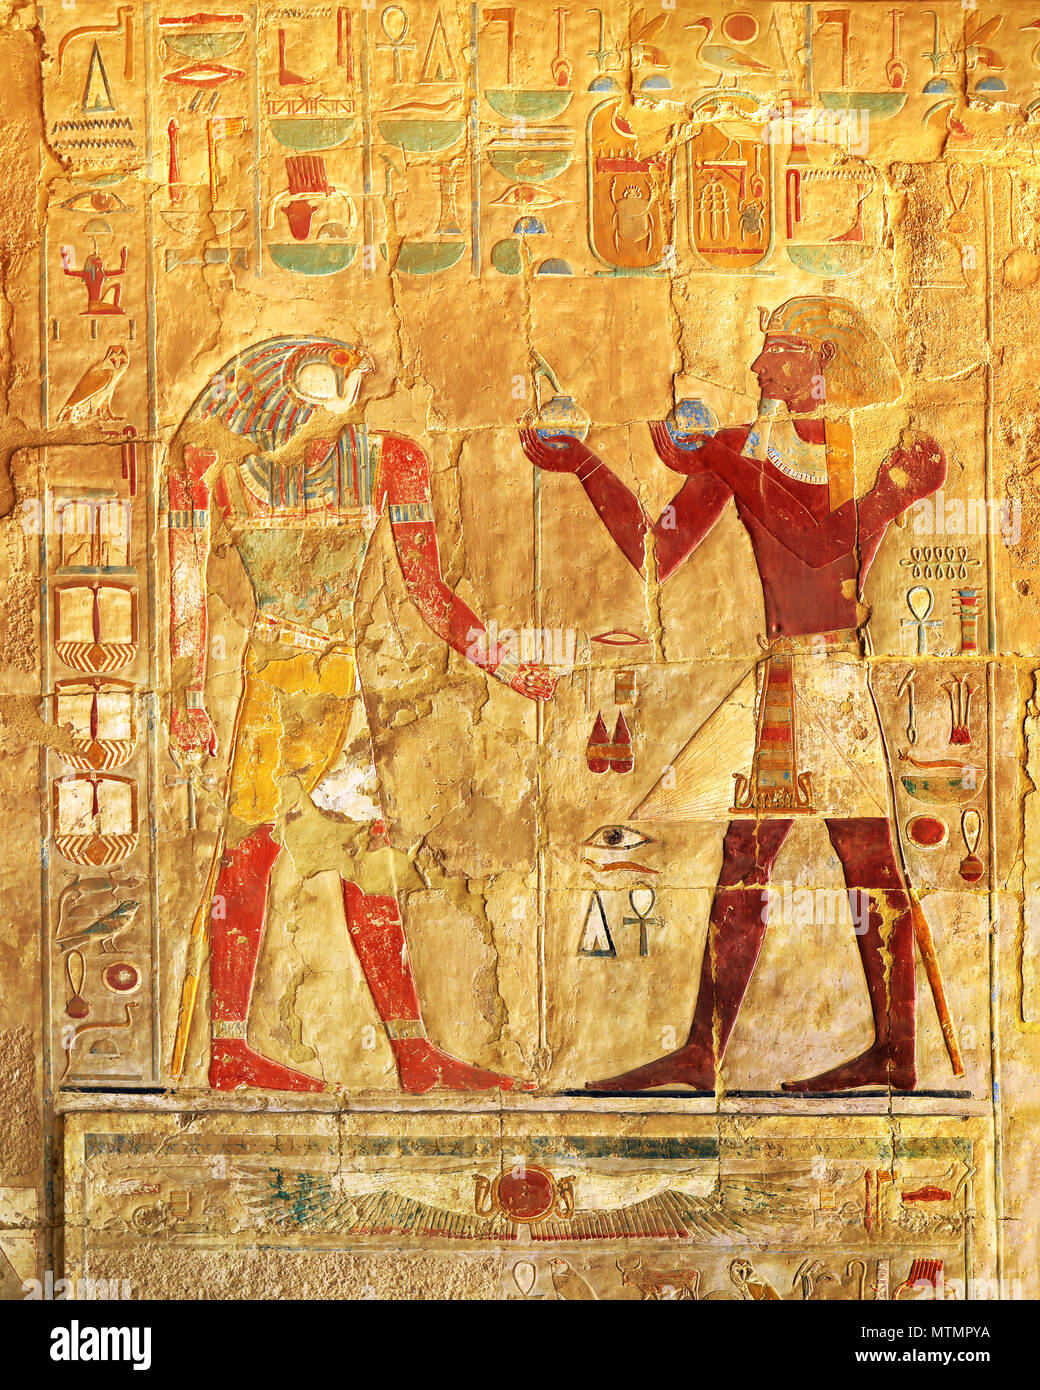 El antiguo egipto imágenes en color Foto de stock